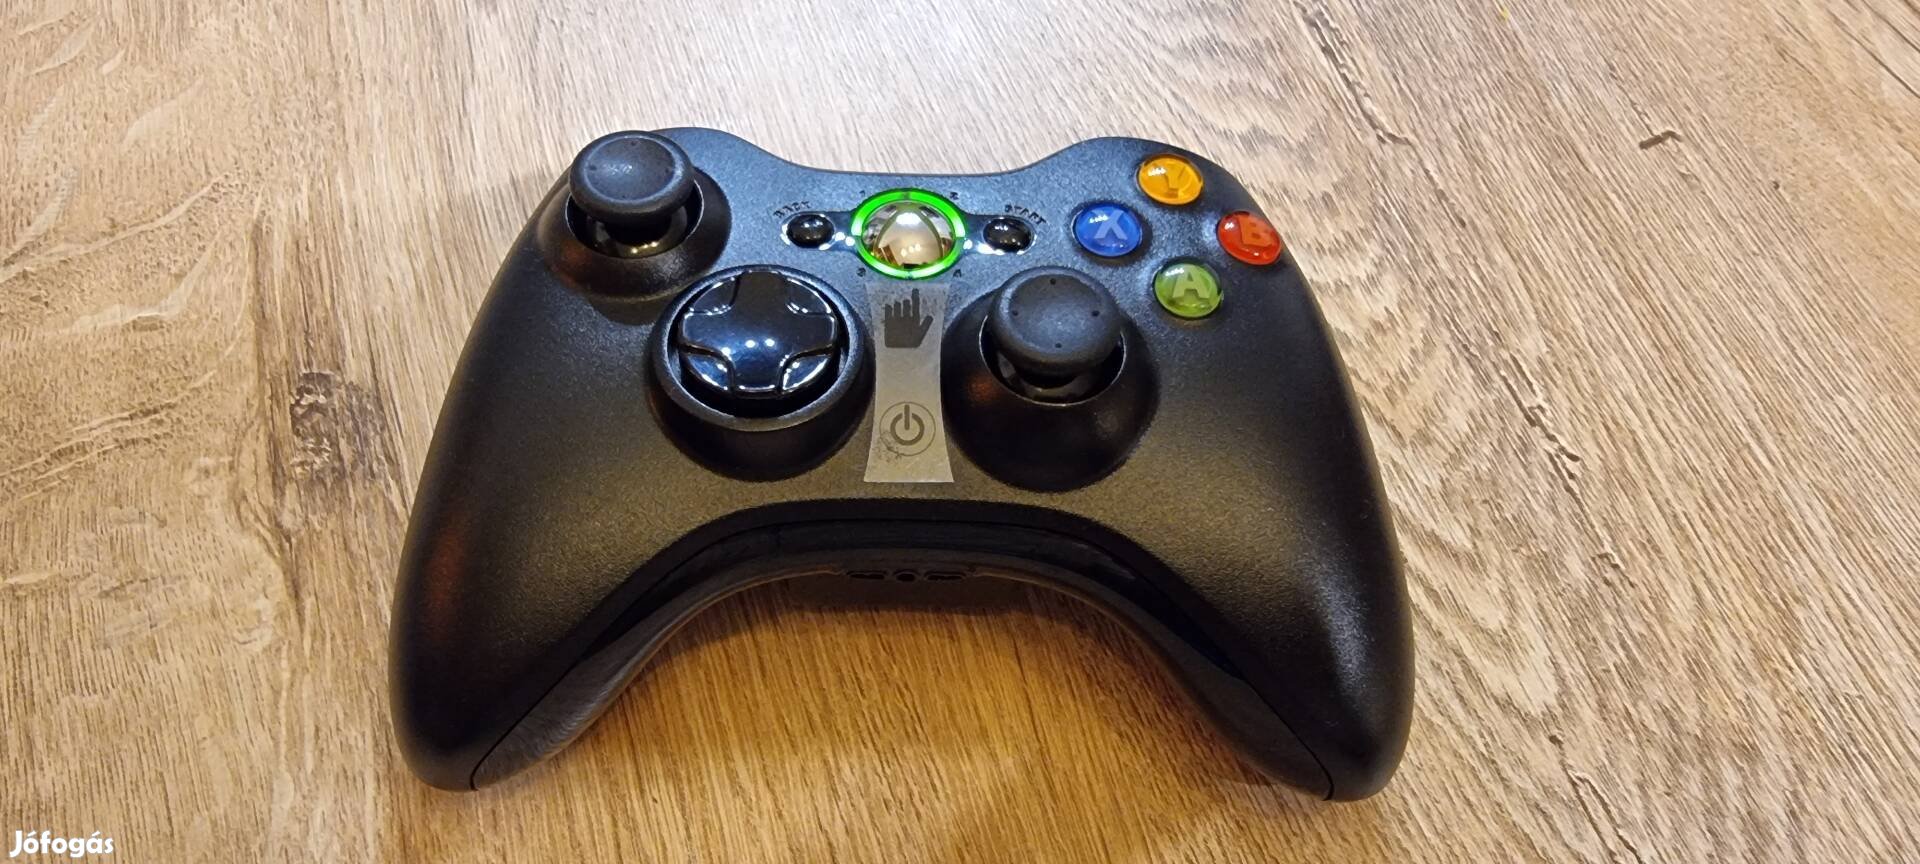 Xbox 360 wireless kontroller vezeték nélküli controller PC joypad